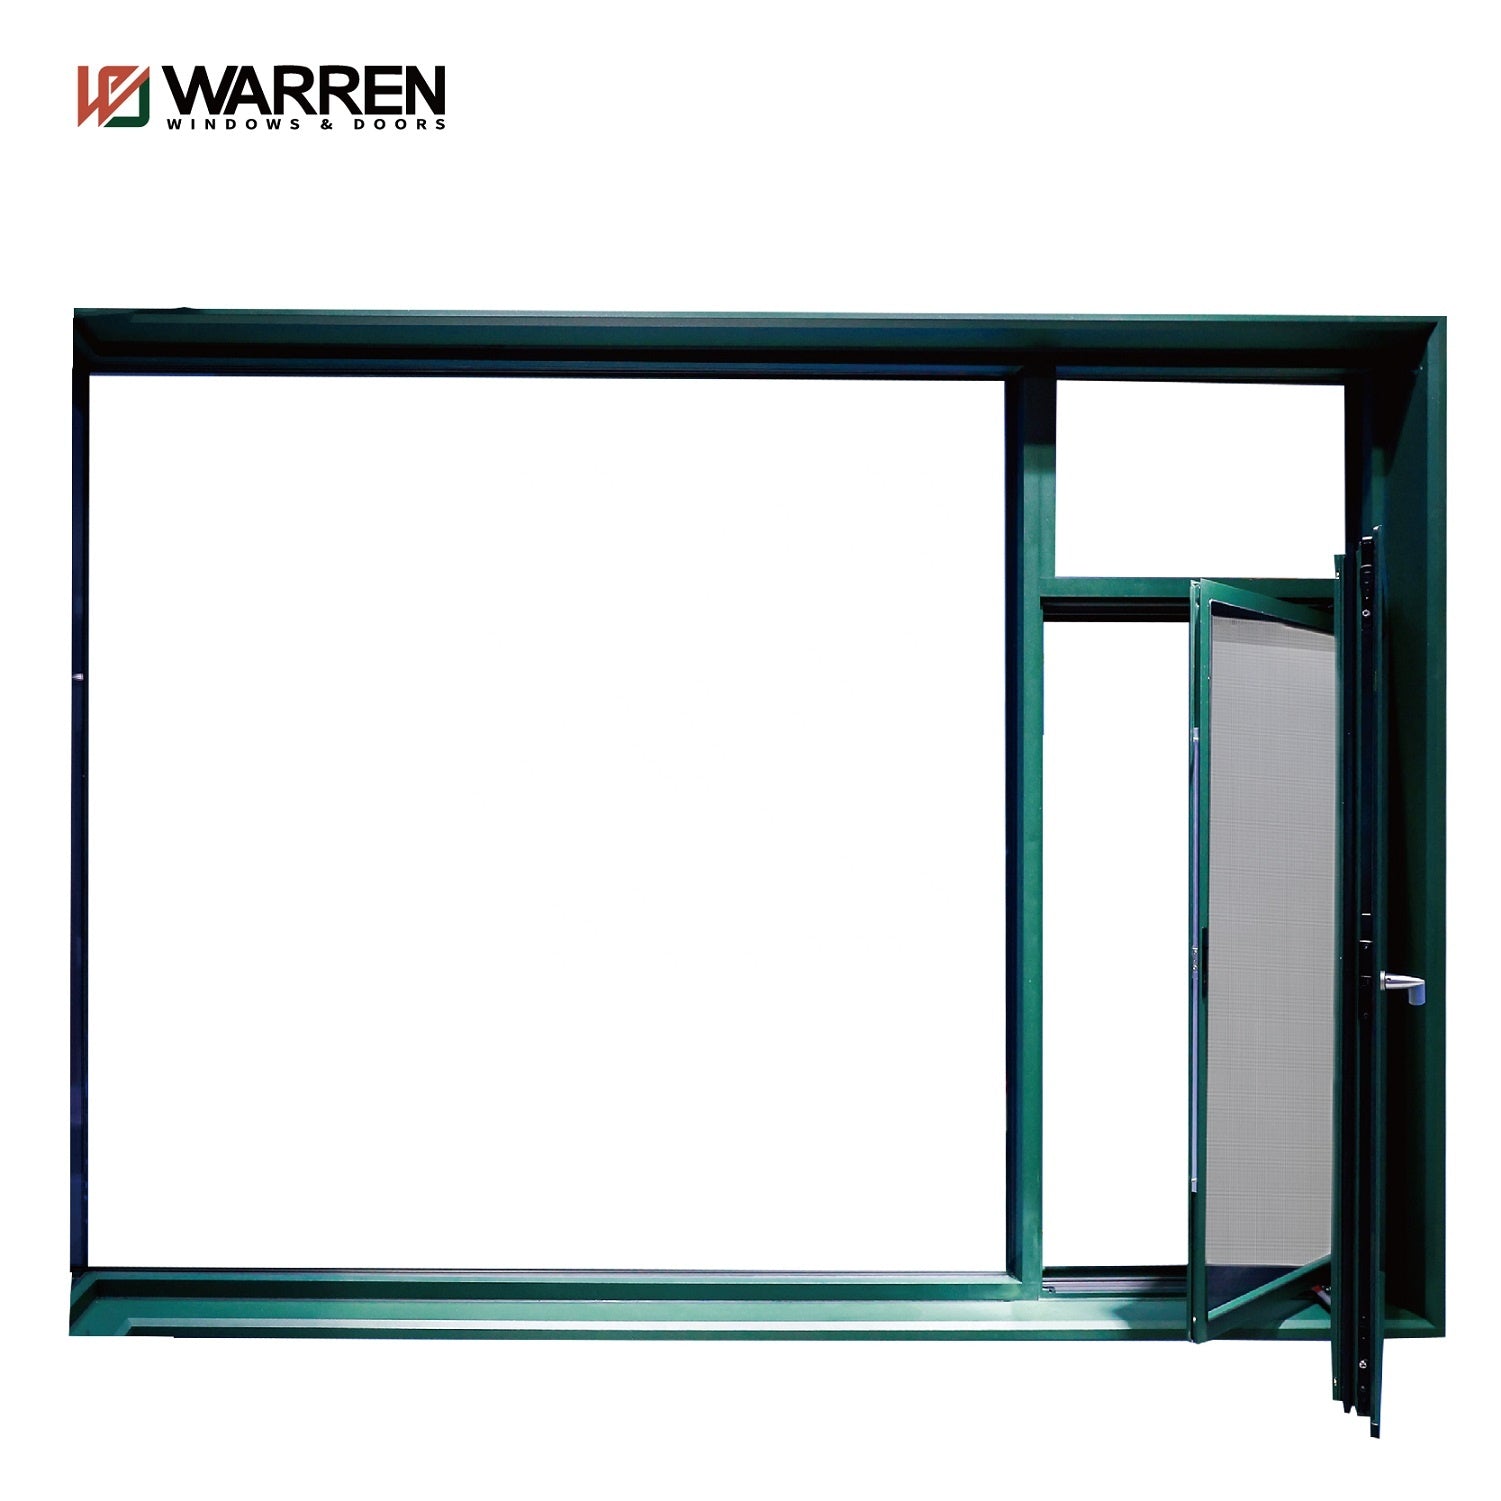 Warren 36x72 Window Sound Proof Tilt&Turn Window Open Outside Tilt & Turn Window With Double/Triple Glazed